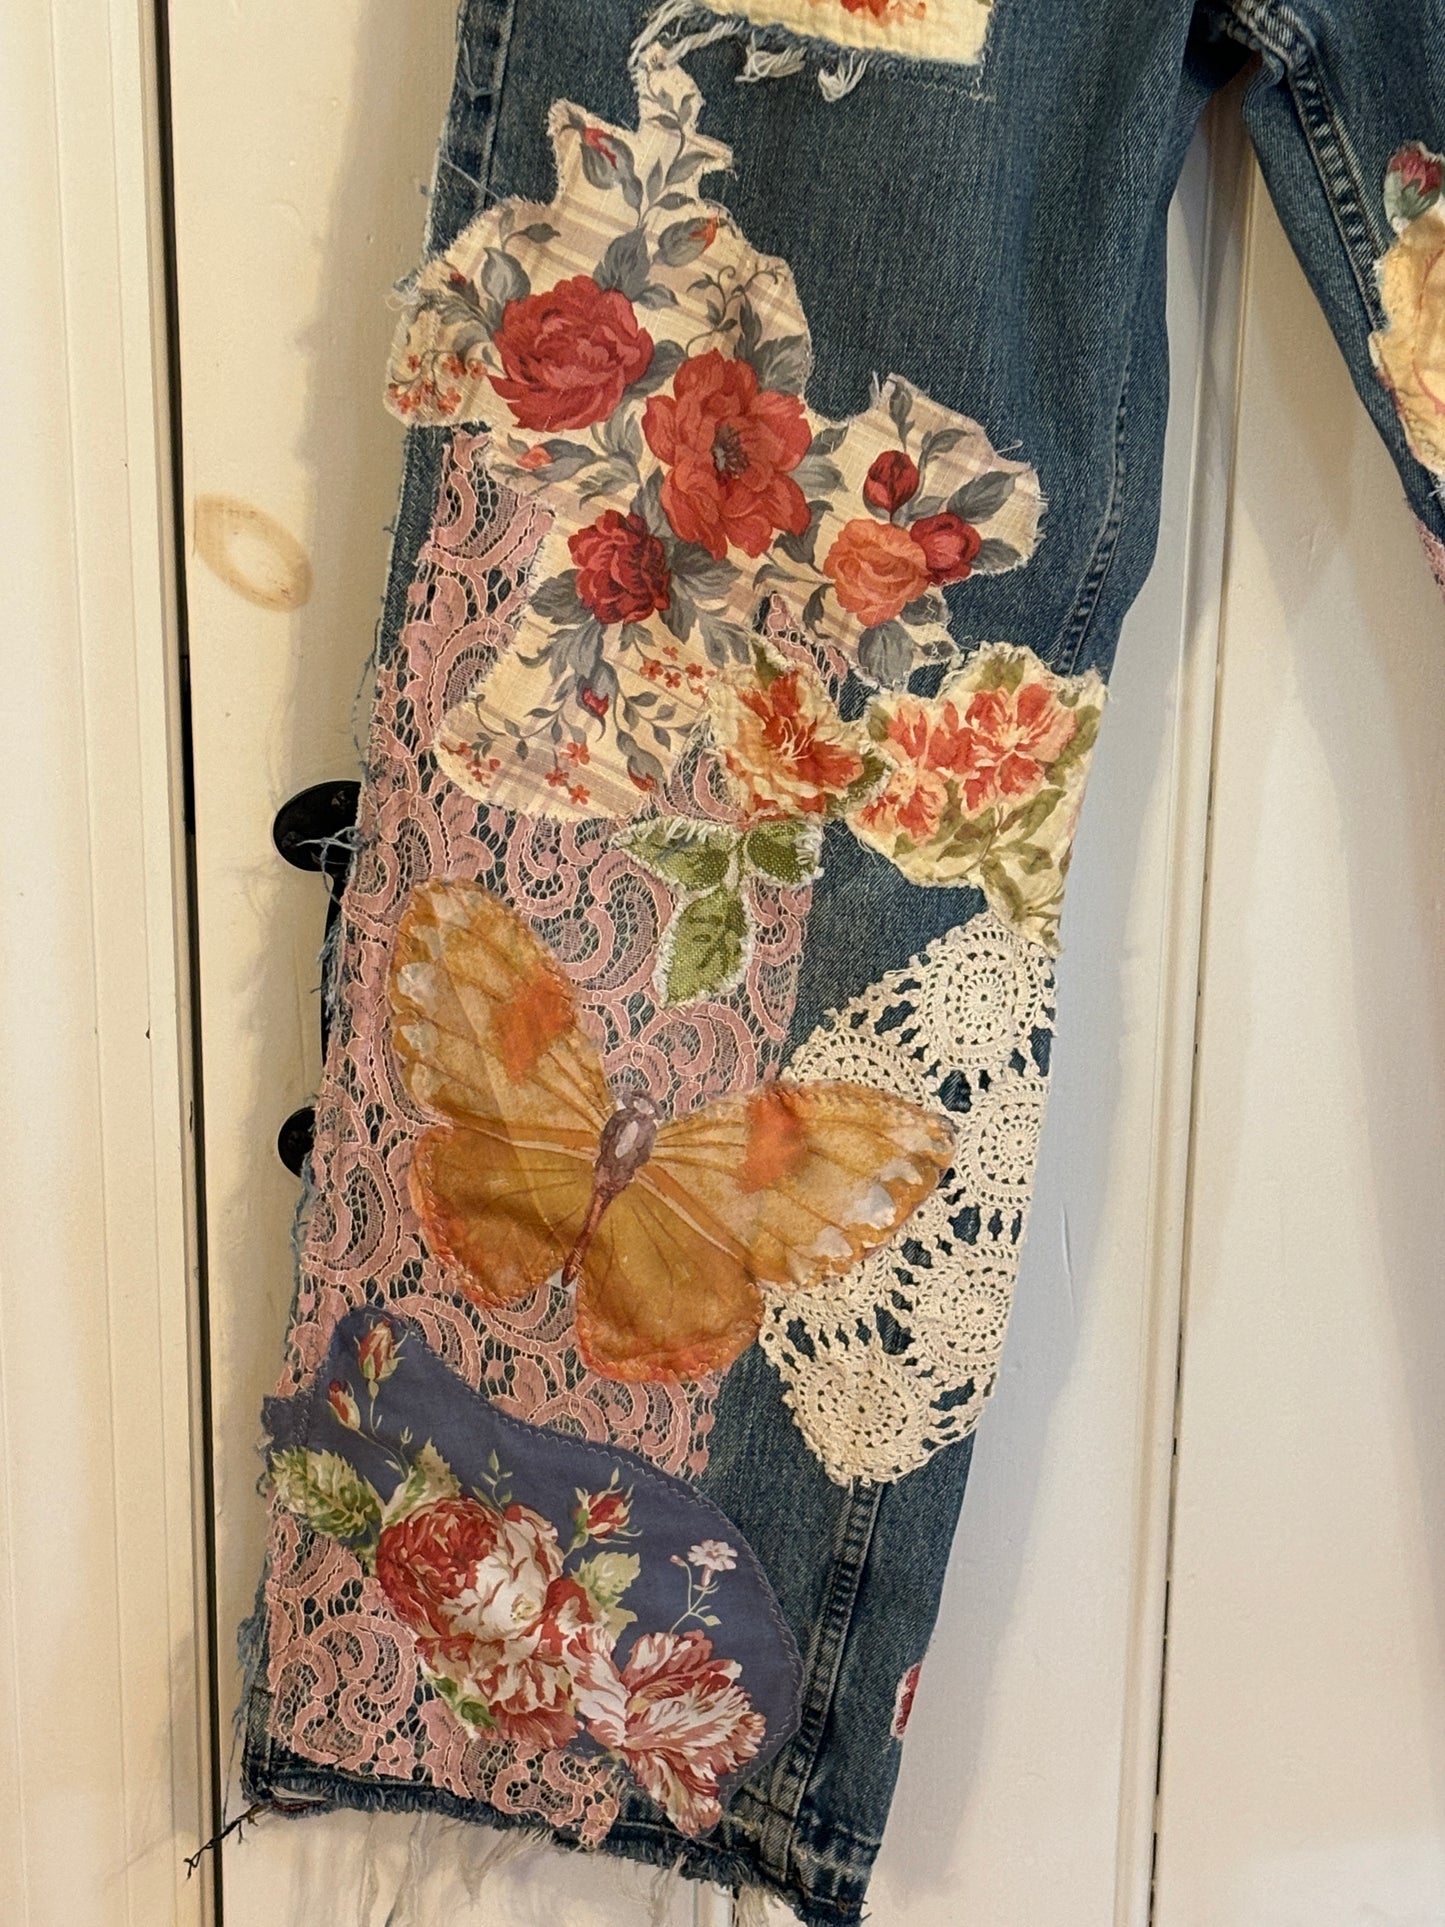 Up-Cycled, Levis Denizen Brand Art Jeans, Altered Boyfriend, Distressed, Floral, Butterflies, Lace, Applique, Appliques Size, 37 x 32